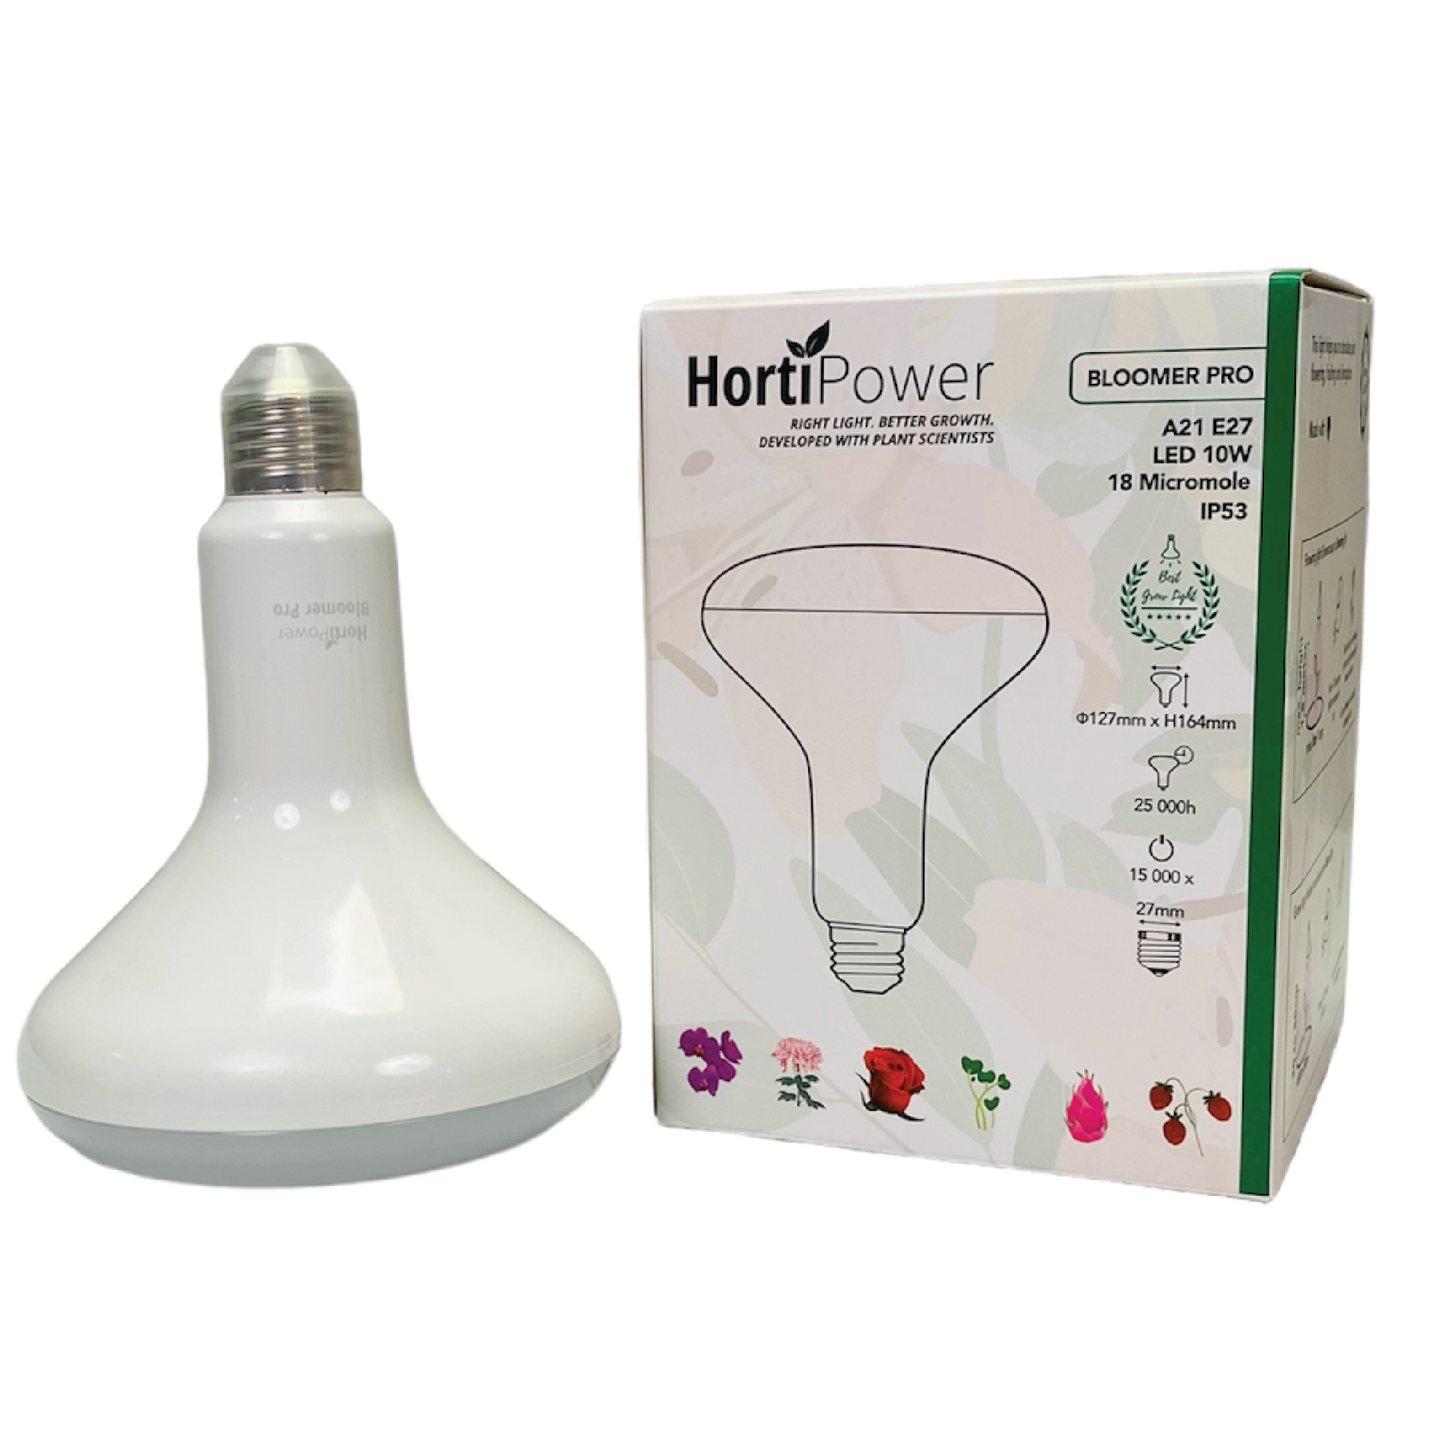 HortiPower Bloomer Pro (Flowering lamp) E27